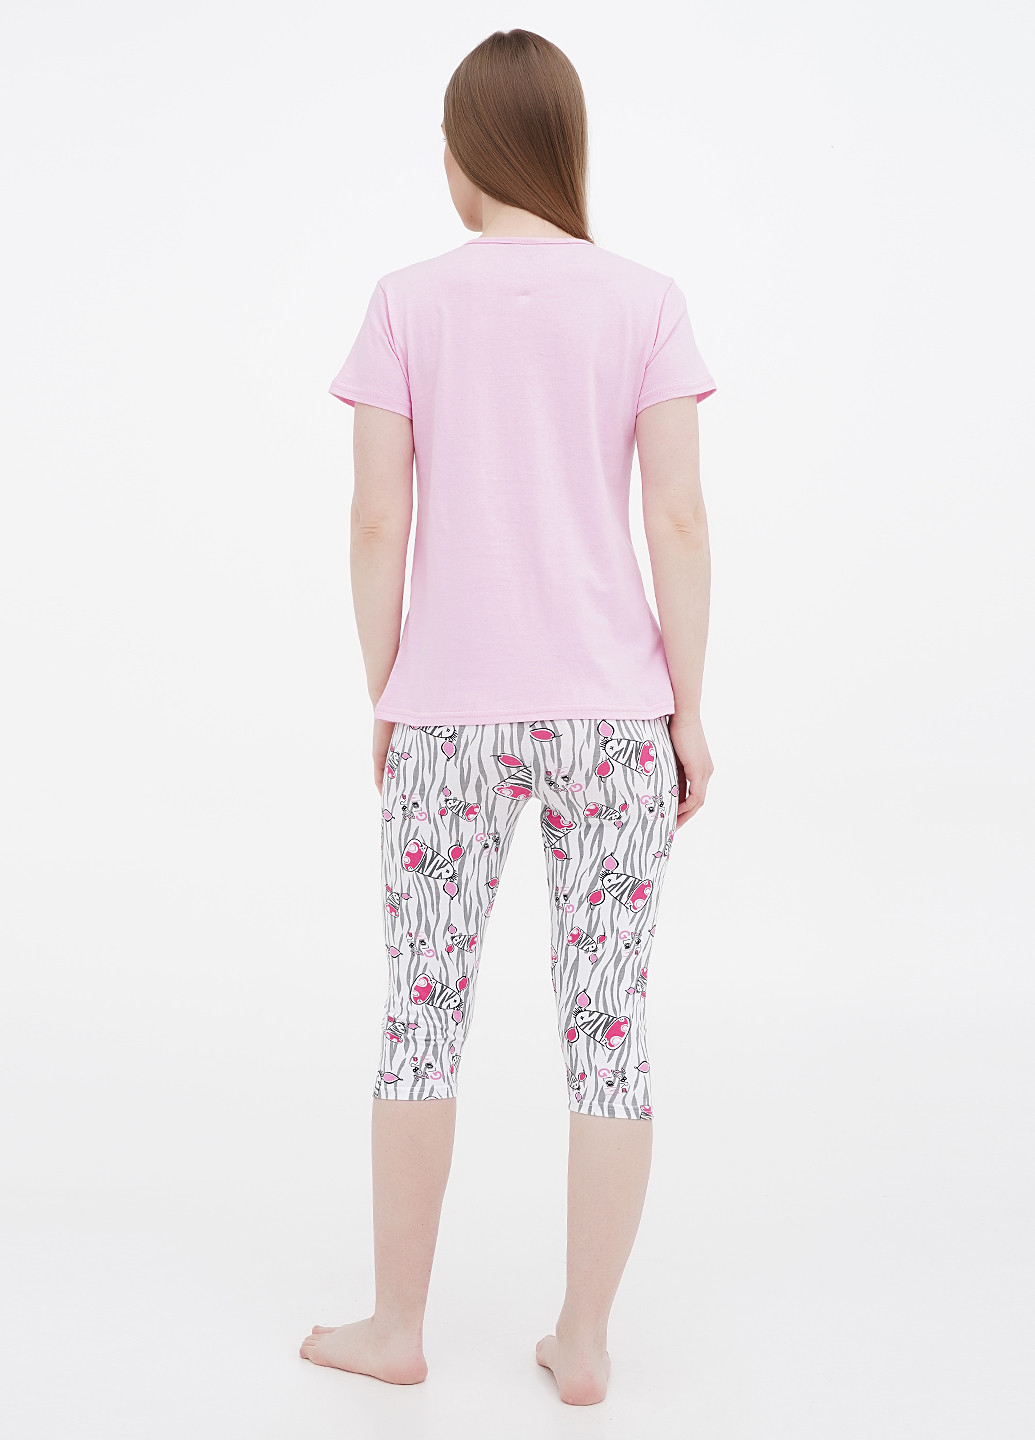 Светло-розовая всесезон пижама (футболка, бриджи) футболка + бриджи Lucci